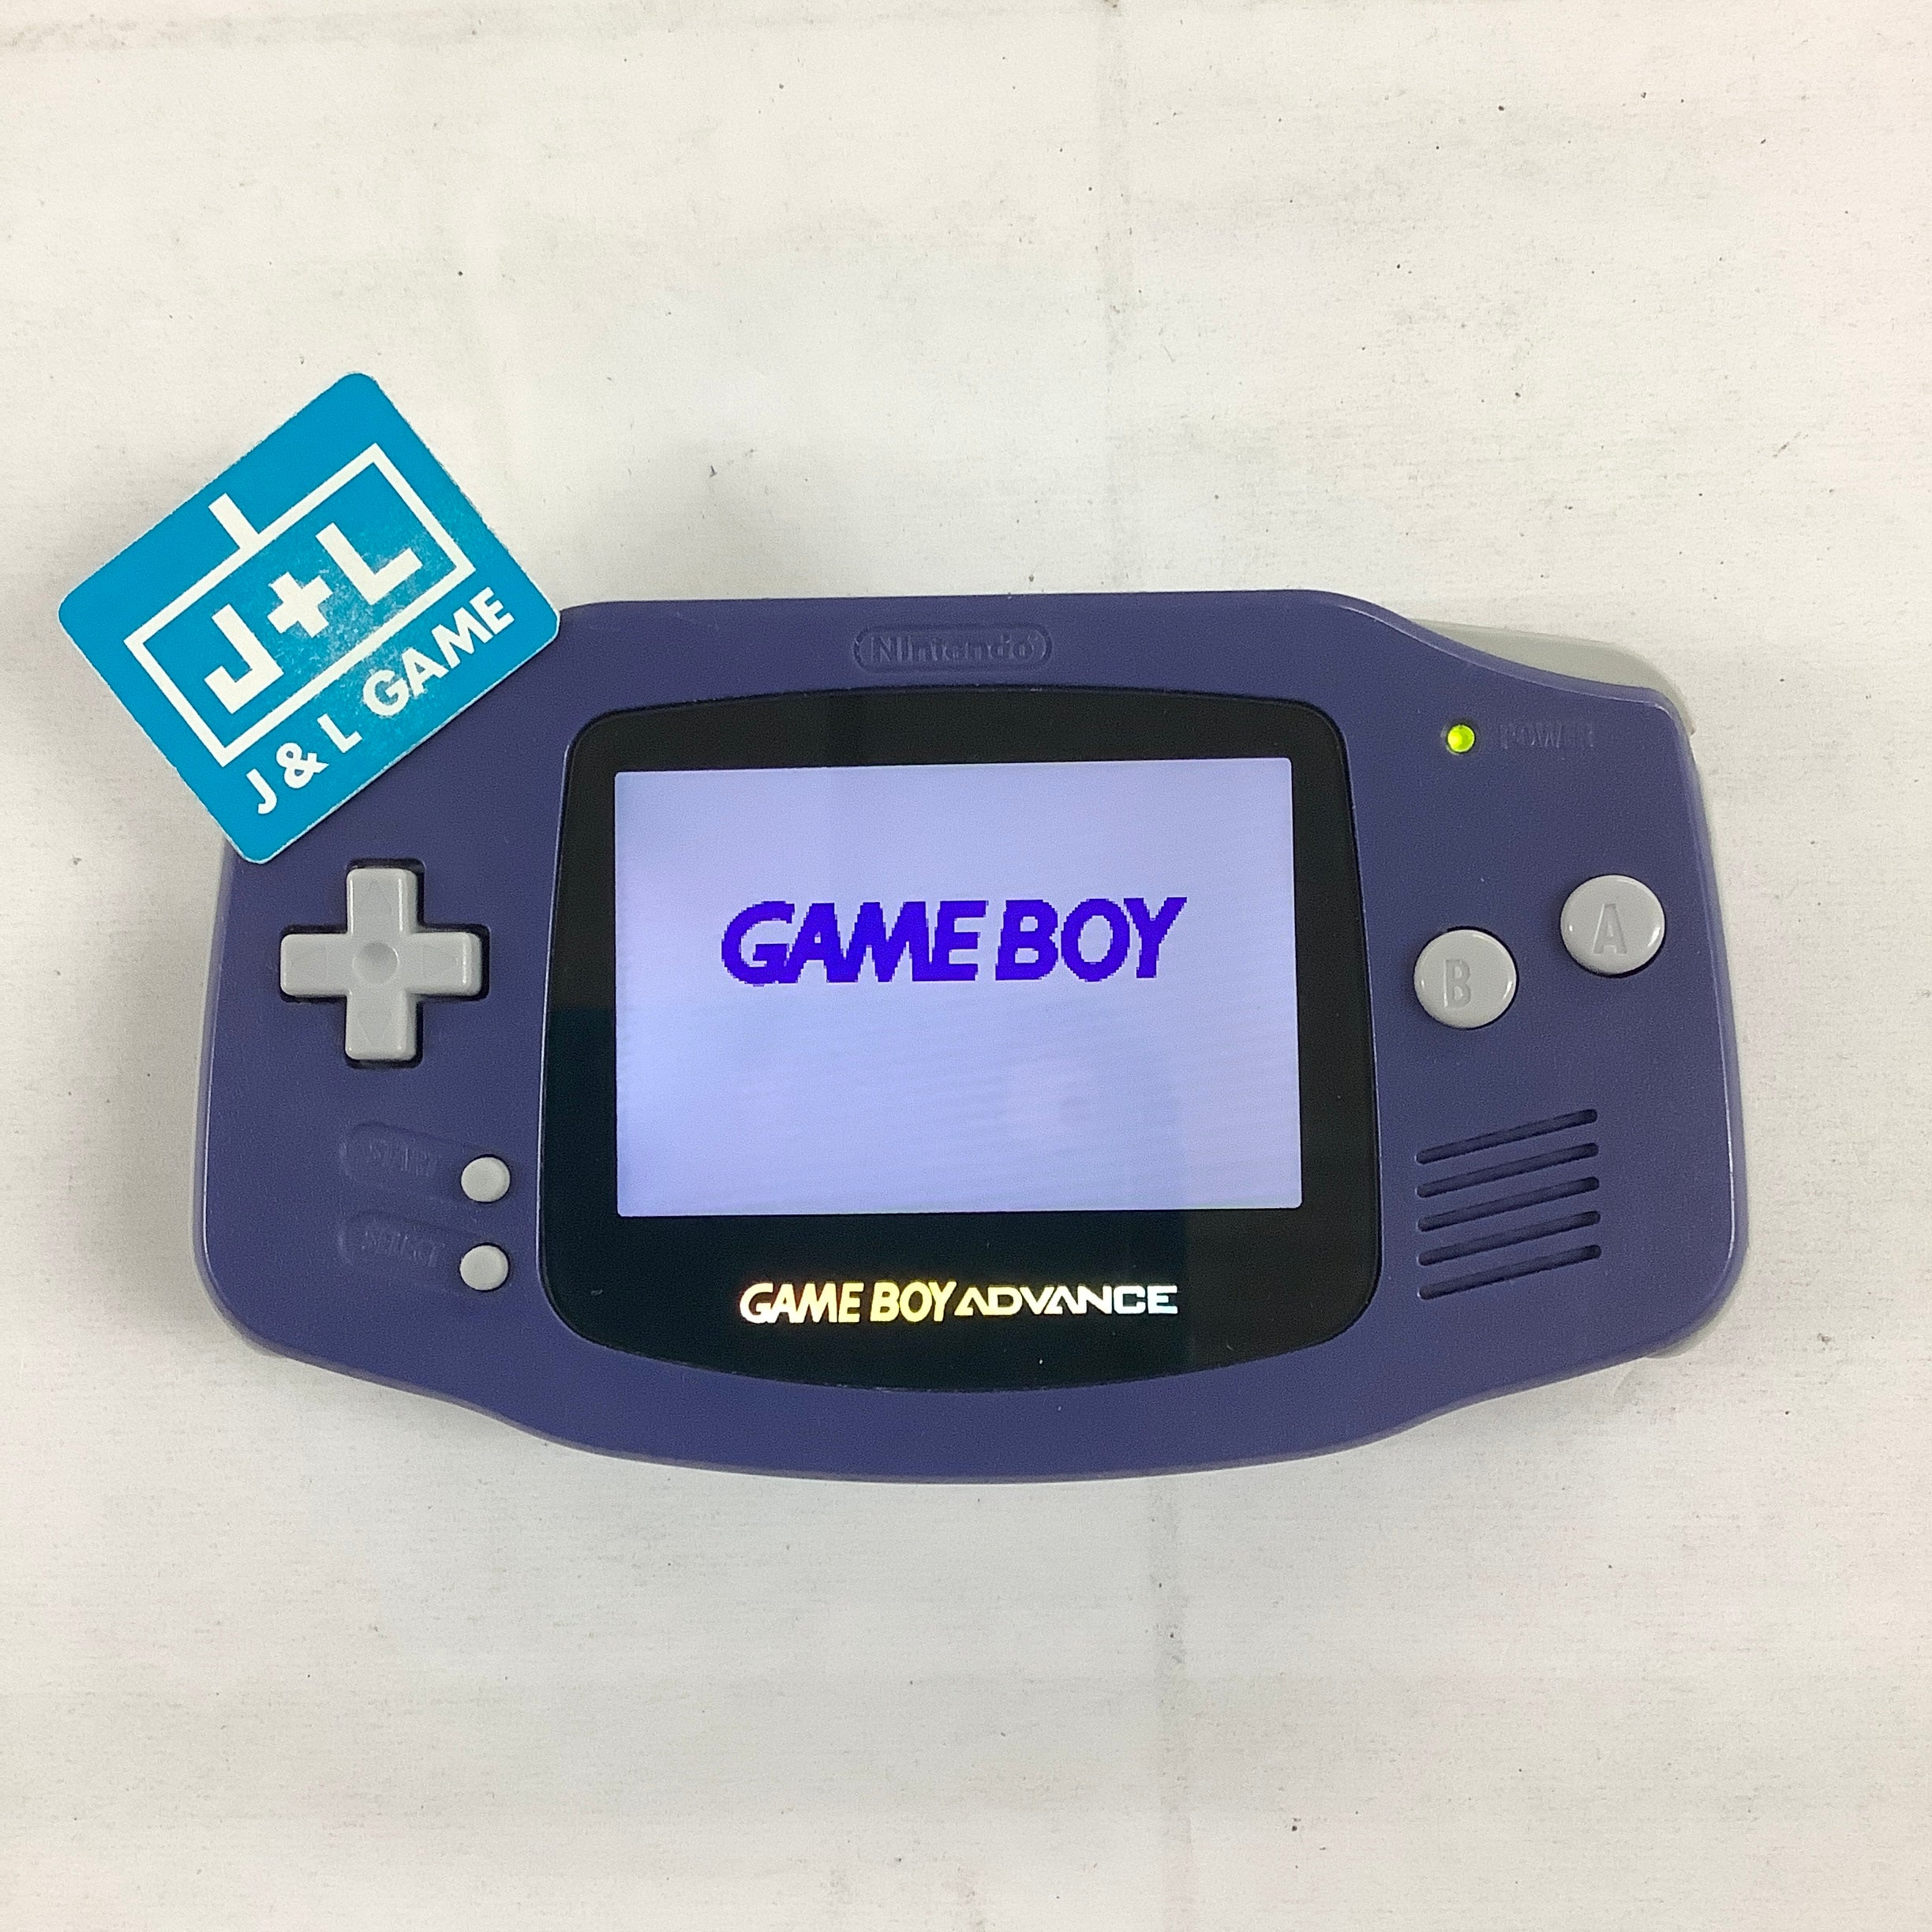 Nintendo Game Boy Advance Console (Indigo With Backlight) - (GBA) Game Boy Advance [Pre-Owned] Consoles Nintendo   